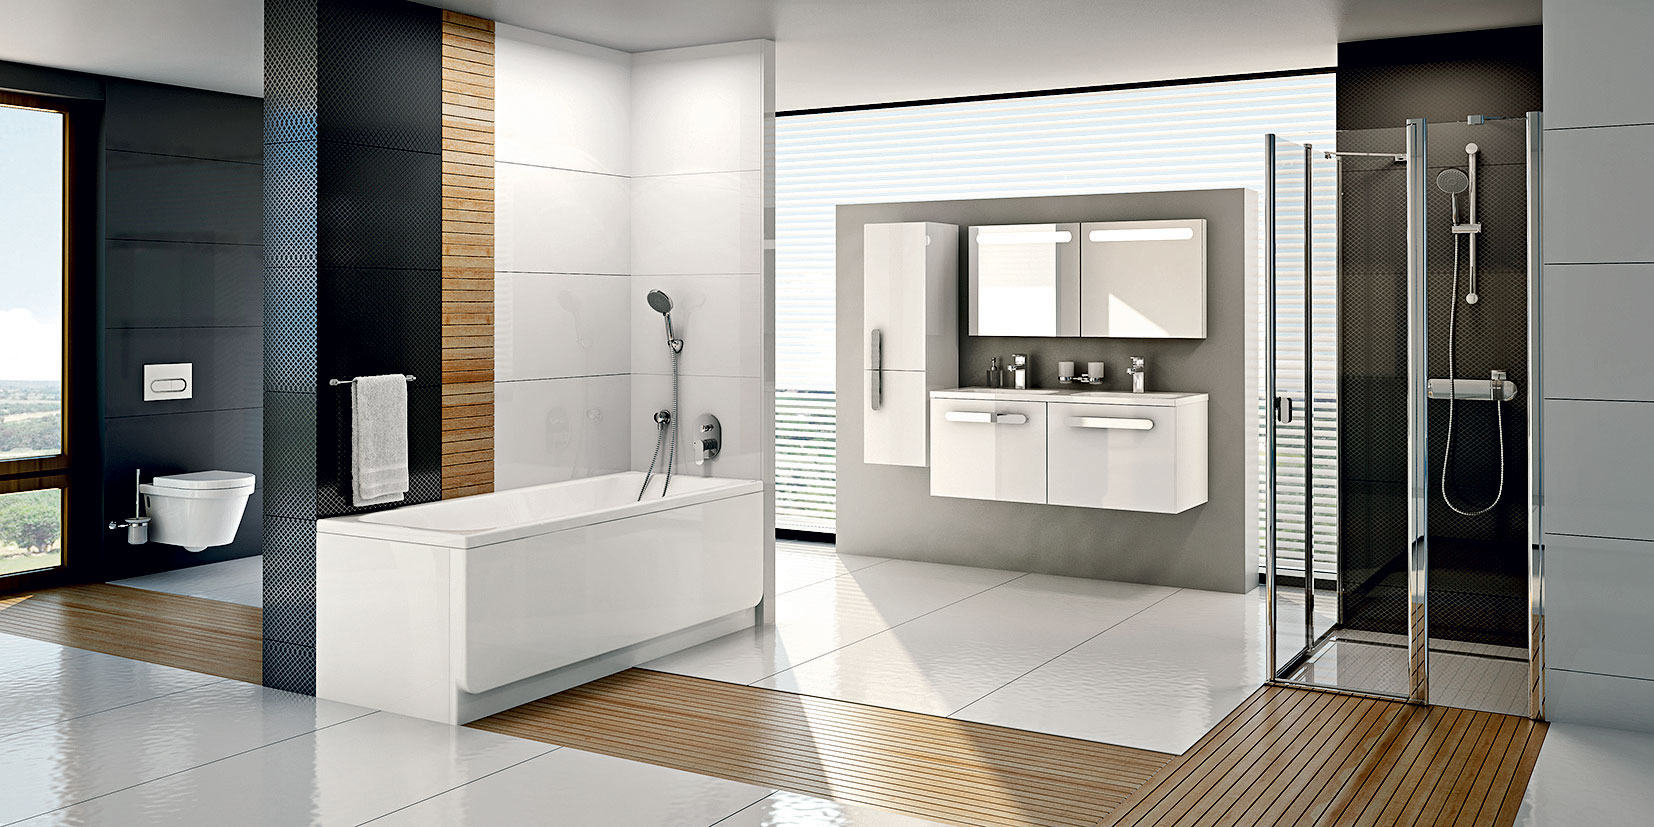 Kúpeľňový koncept Chrome je zaujímavý najmä svojím rozsahom. V harmonickom dizajne môžete mať vybavenú aj kúpeľňu, aj WC.